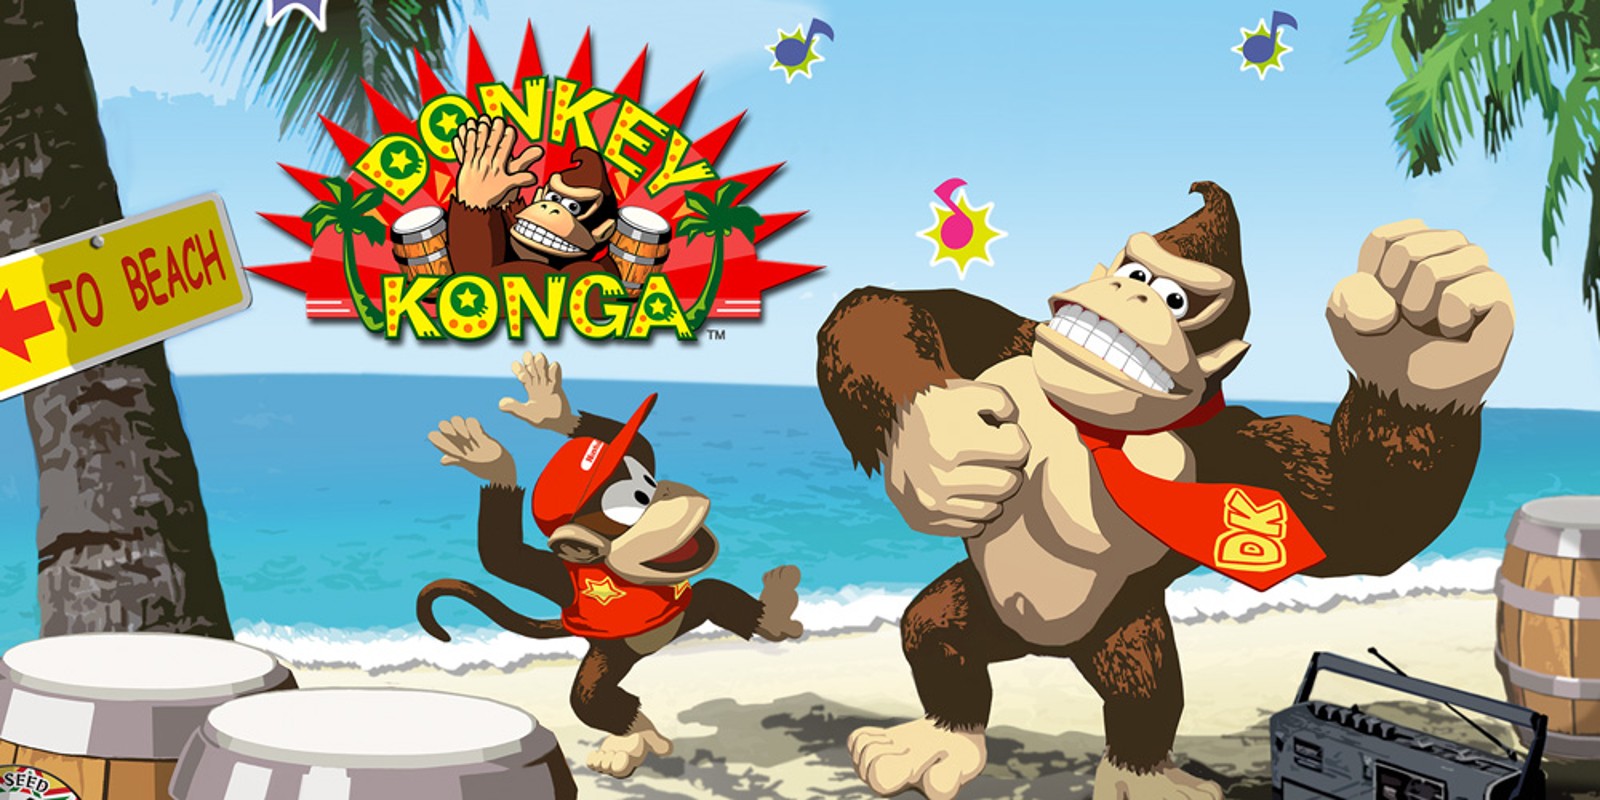 Reggie nenáviděl Donkey Konga a myslel si, že zničí značku Donkey Kong